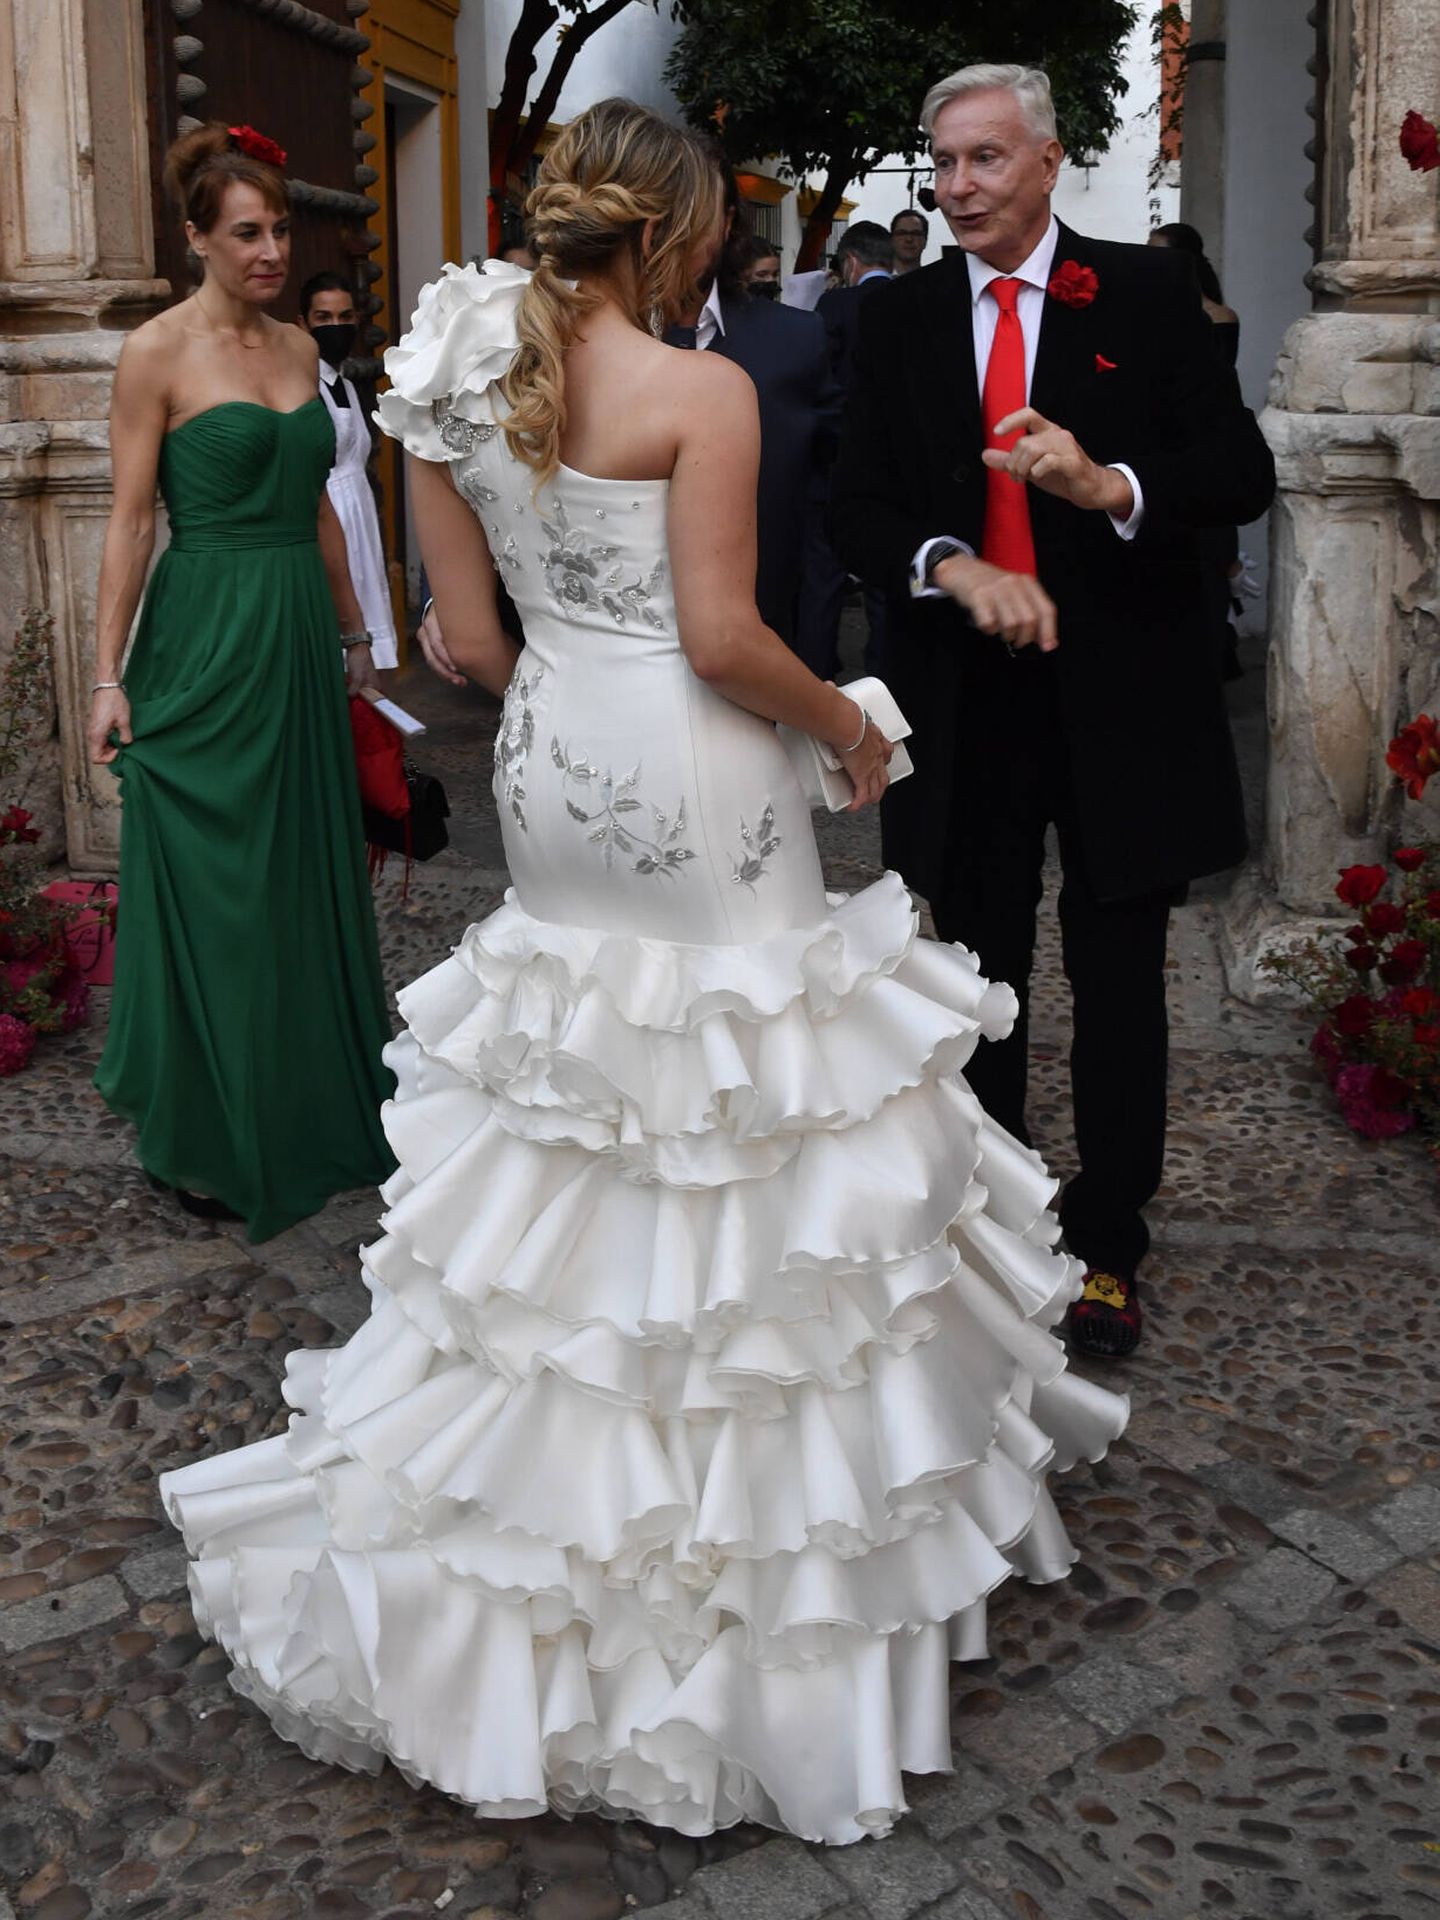 Detalle del vestido escogido por la novia en su preboda, visto por detrás. (Gtres)